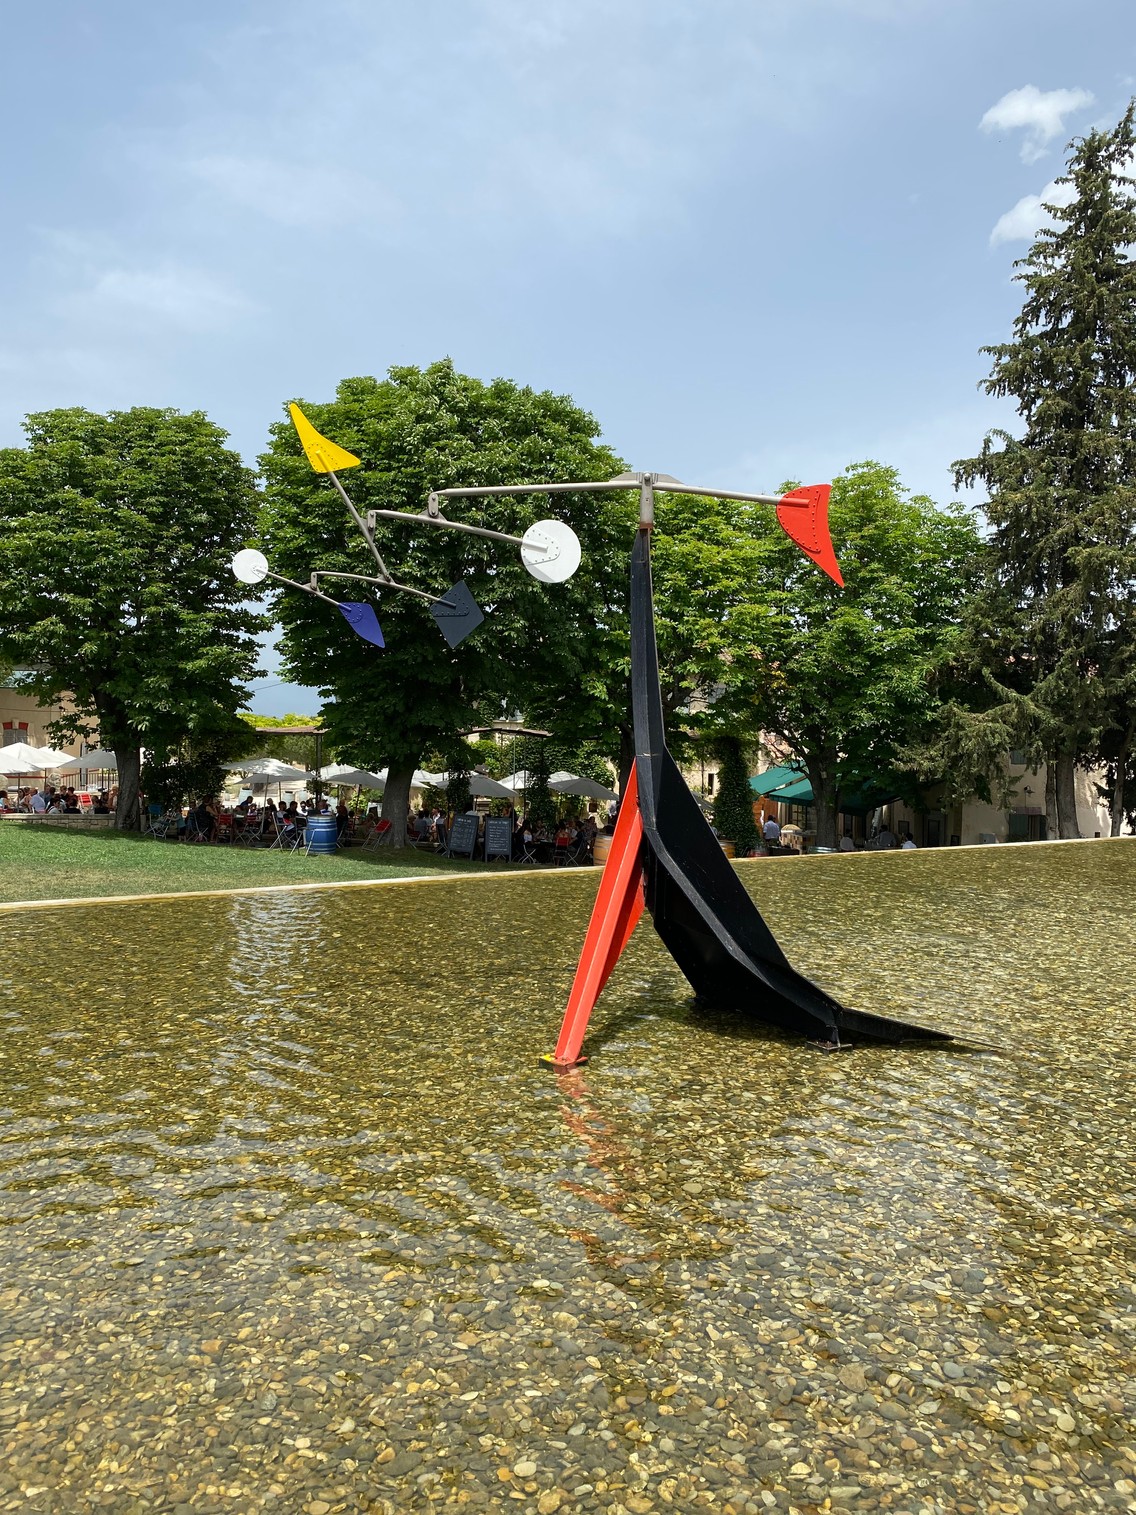 Das Windspiel auf dem Wasser stammt von Alexander Calder_Copyright Ralf Nestmeyer